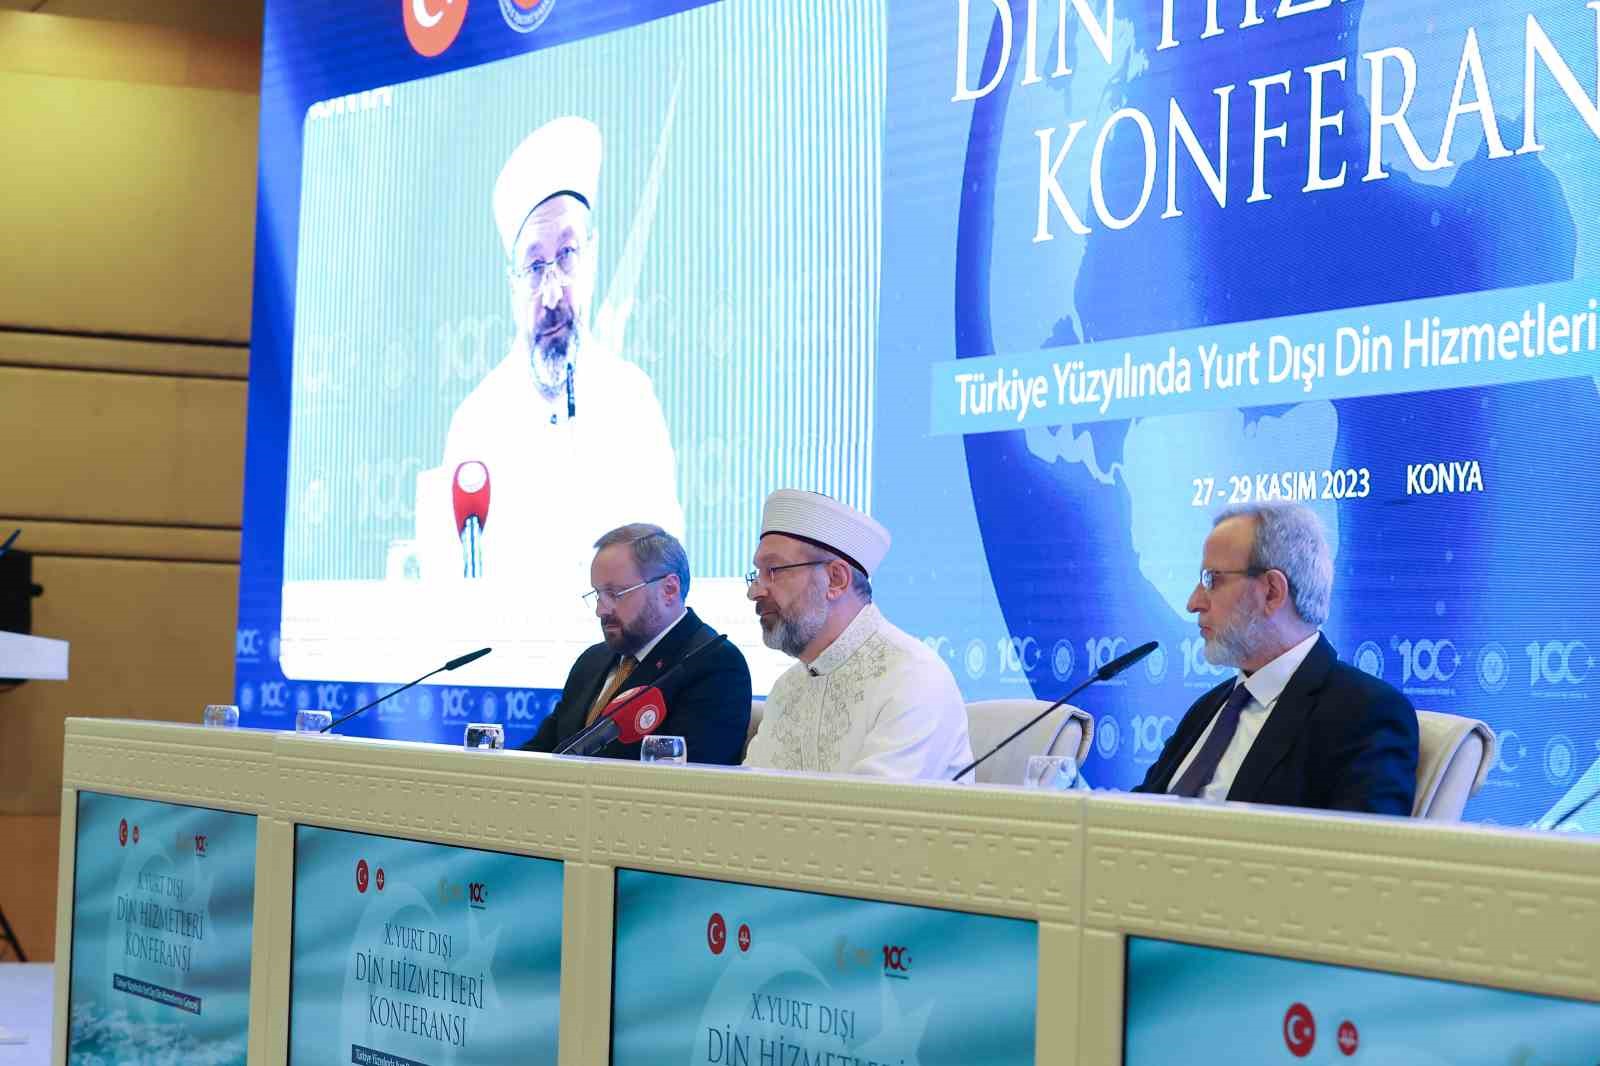 Diyanet İşleri Başkanı Erbaş: “Avrupa’da İslam’a yönelik mühendislik çalışmasının varlığı kabul edilemez”
